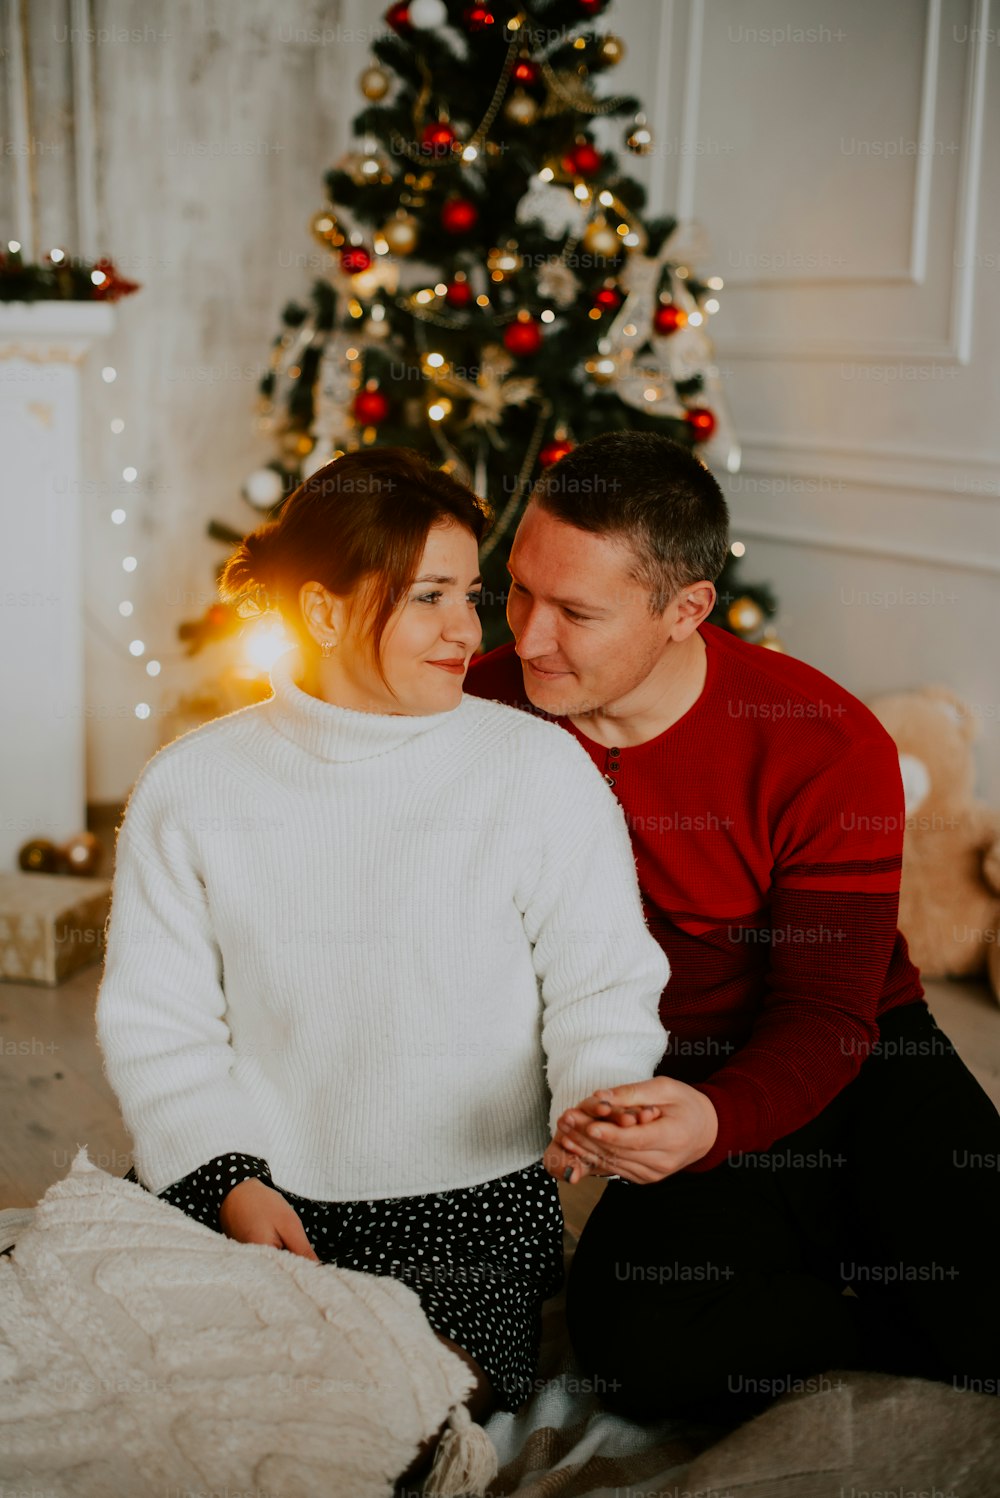 크리스마스 트리 앞에서 소파에 앉아 있는 남자와 여자